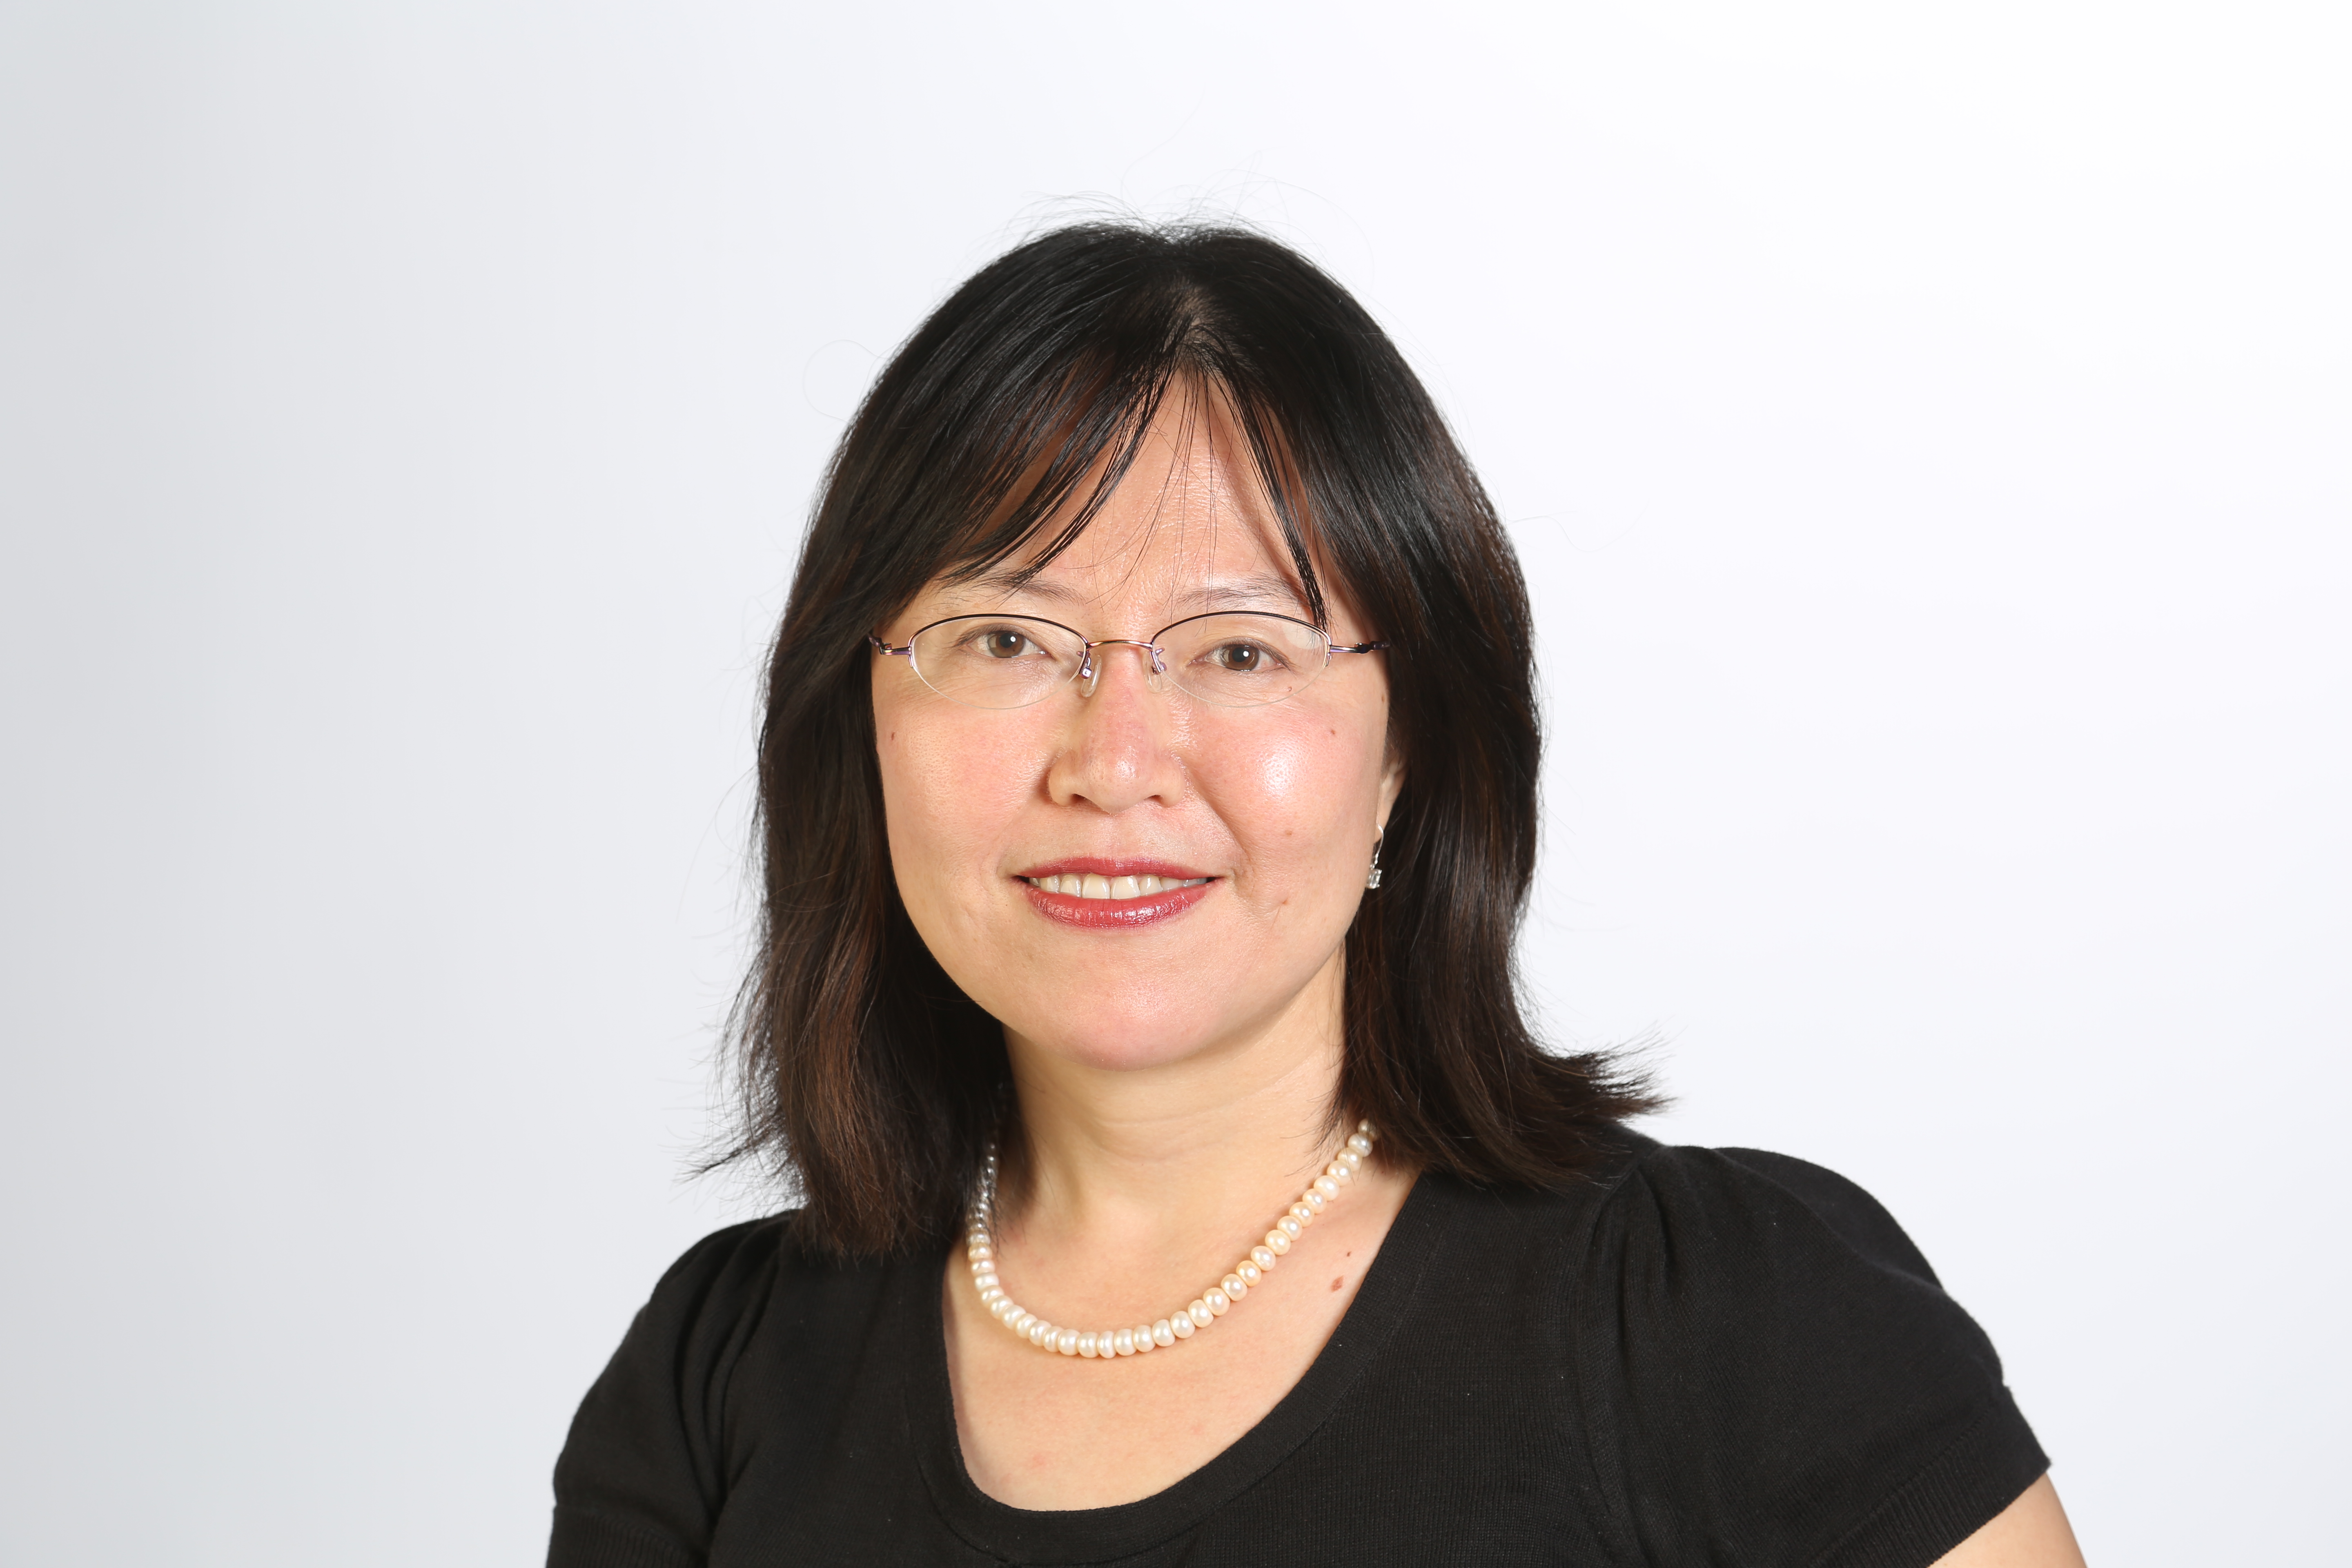 Cindy Wu